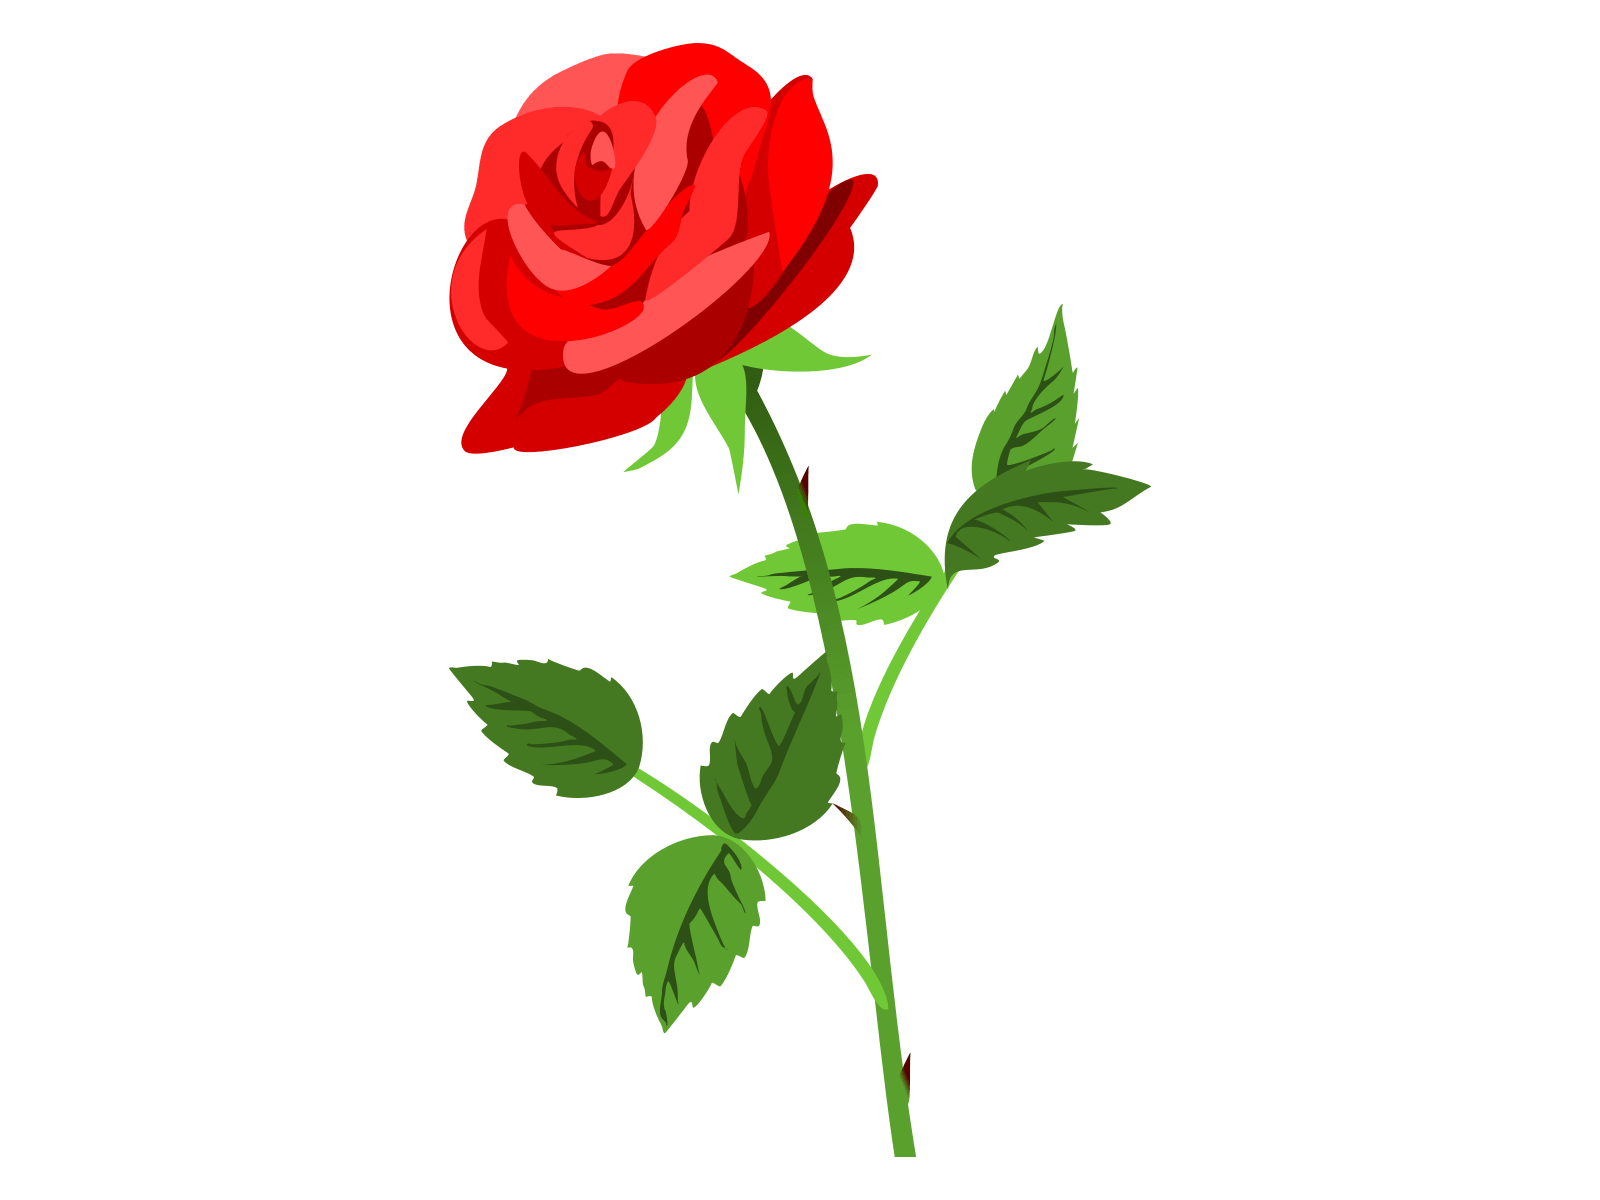 無料 バラ 薔薇 の花イラスト 母の日 誕生日 お祝いにも使えます